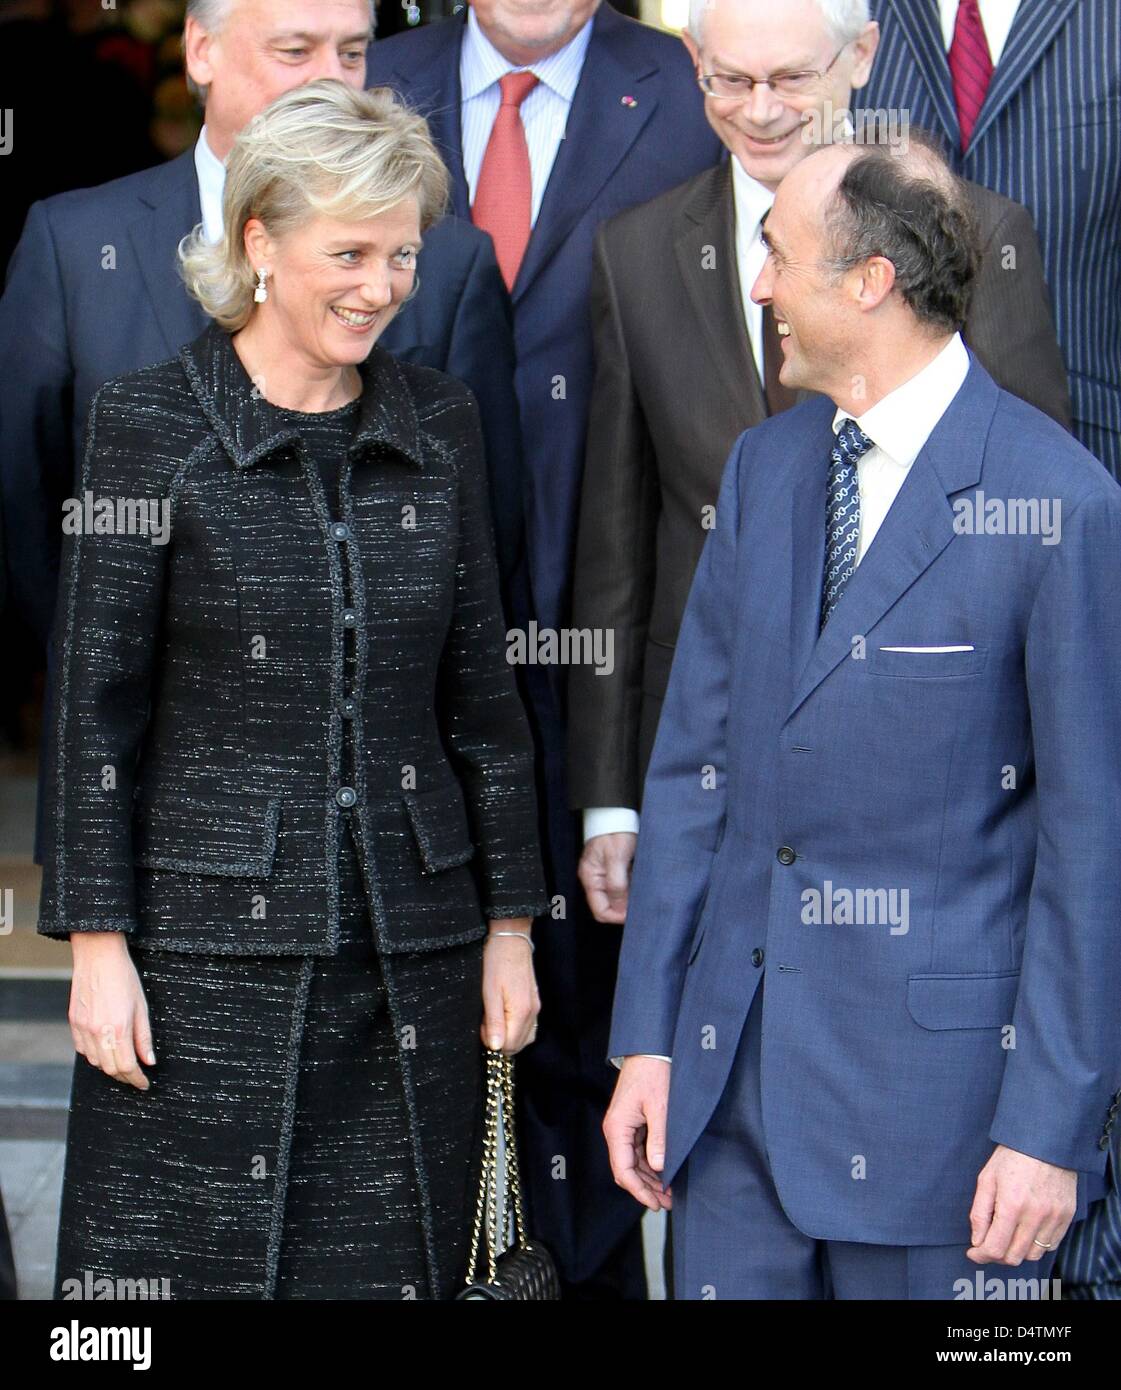 La Princesse Astrid et le Prince Lorenz assistent à la célébration annuelle de la King's fête au Palais de la nation, le bâtiment du Parlement à Bruxelles, Belgique, 15 novembre 2009. Photo : Patrick van Katwijk Banque D'Images